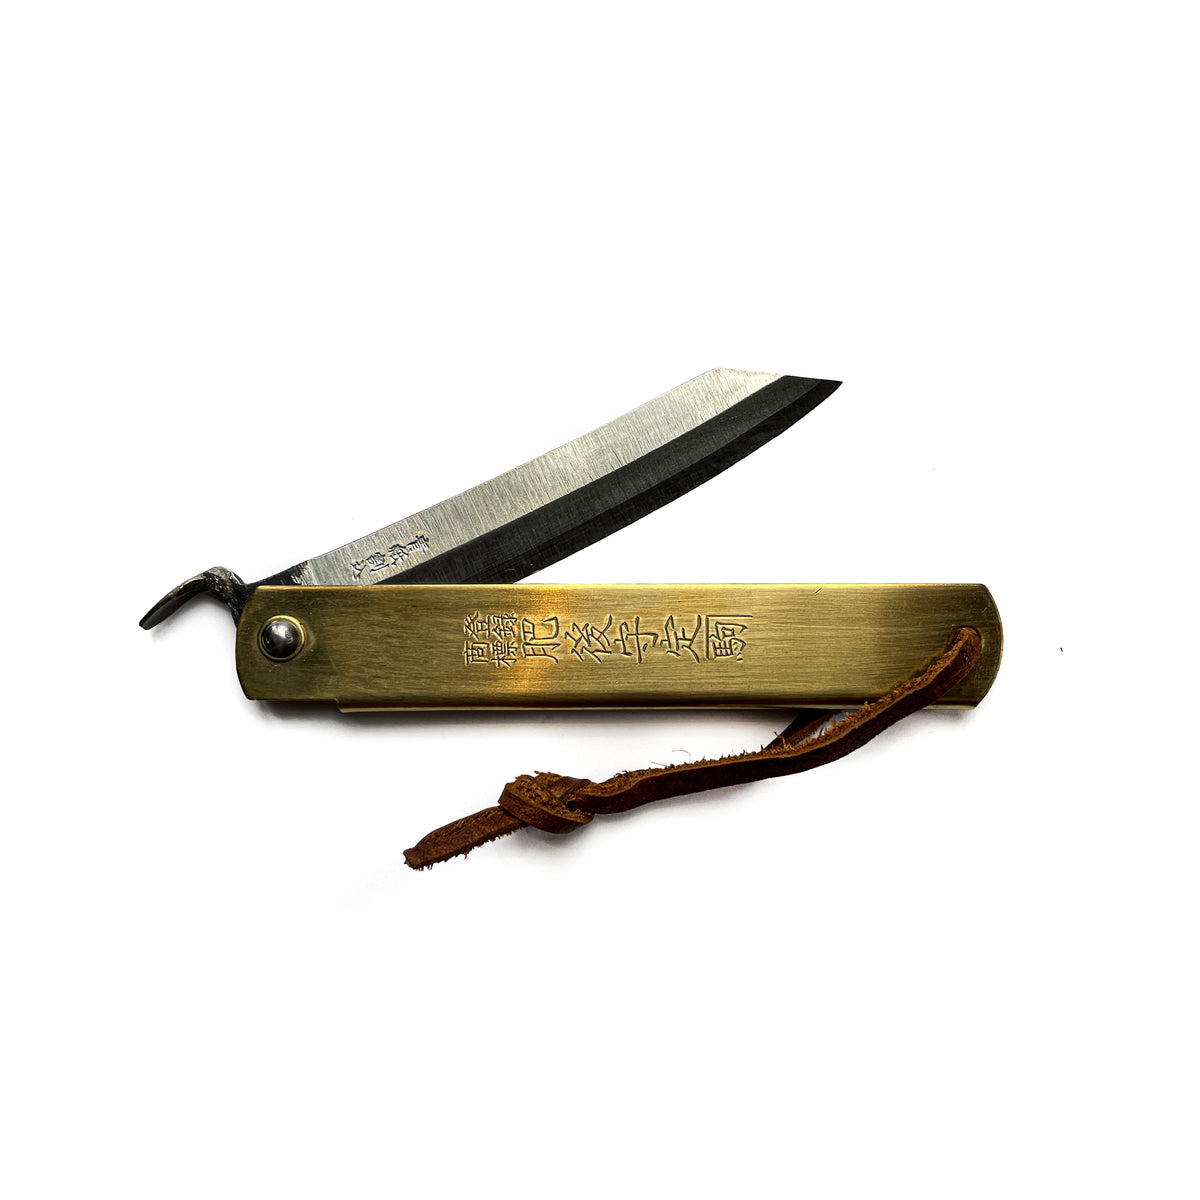 Japanese Folding Knife - Brass – November 19 Shop